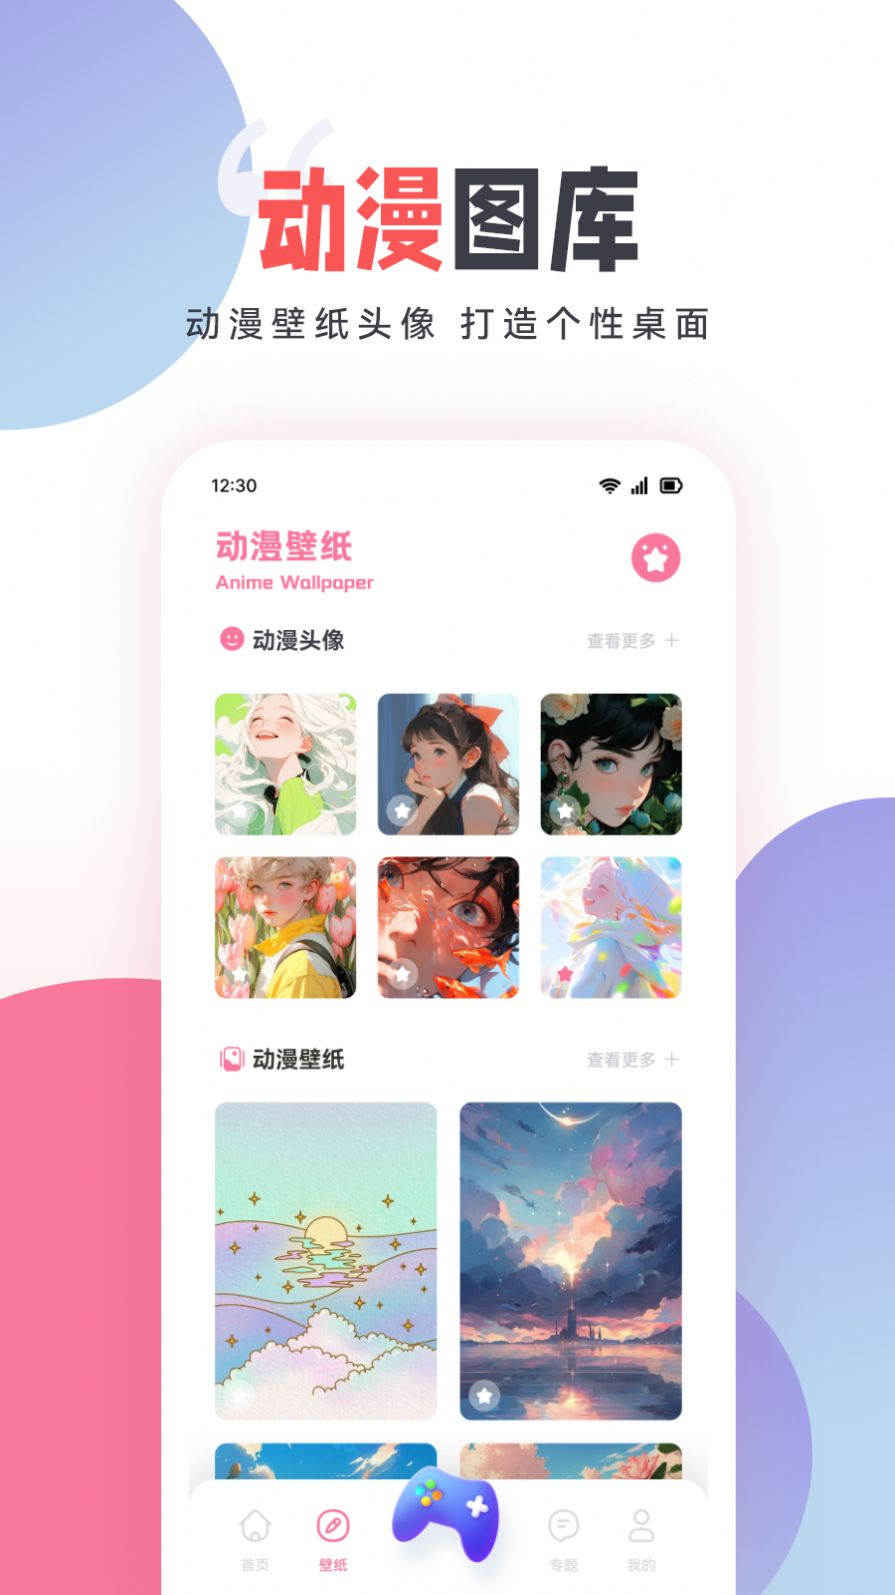 嘀嘀动漫盒子手机版app官方正版下载图片6